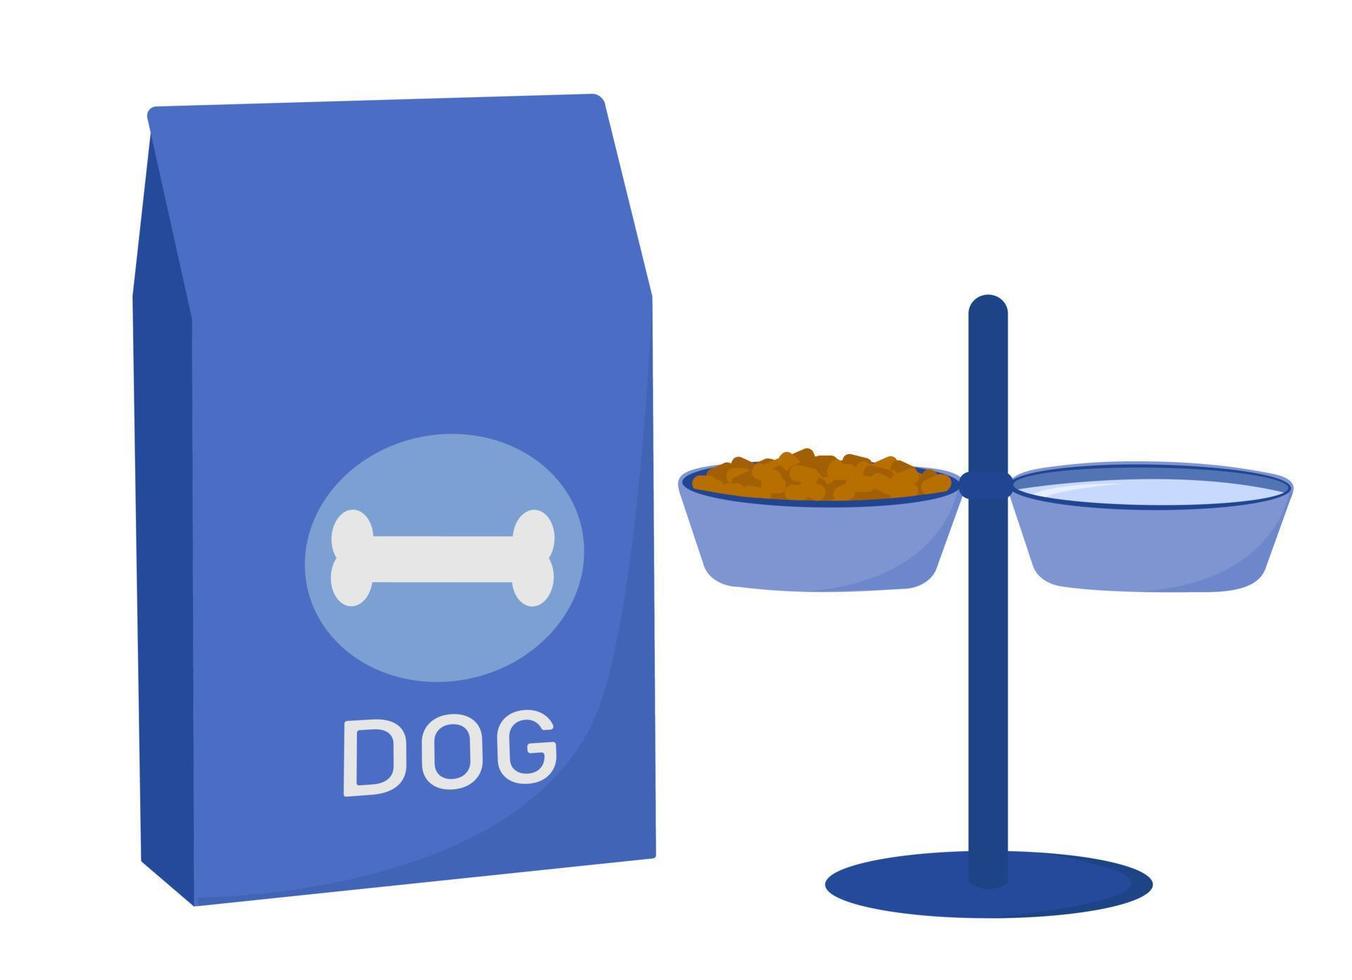 la nourriture pour animaux. nourriture pour et chiens. bol, illustration plate de vecteur d'emballage